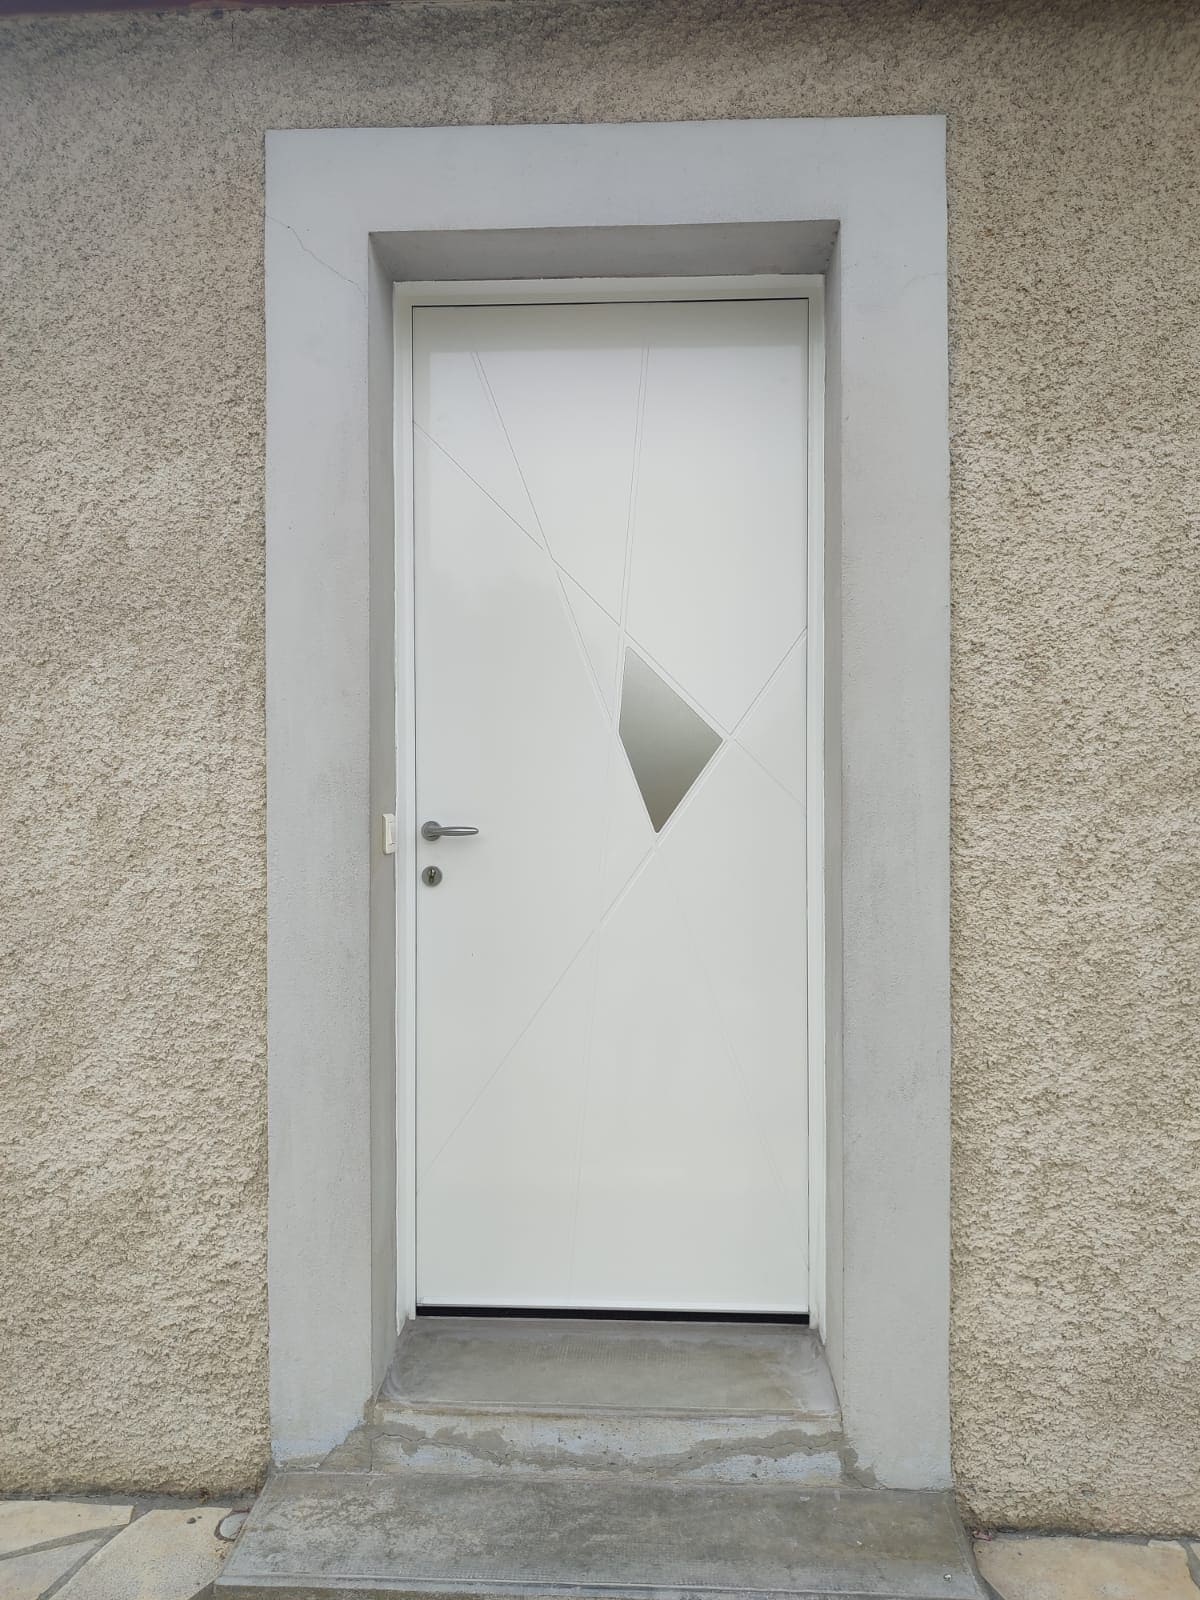 Photo d'une porte d'entrée blanche avec une poignée en aluminium, il y a un décor fait de quatre rainures qui se croisent formant un polygone gris en leurs centre.